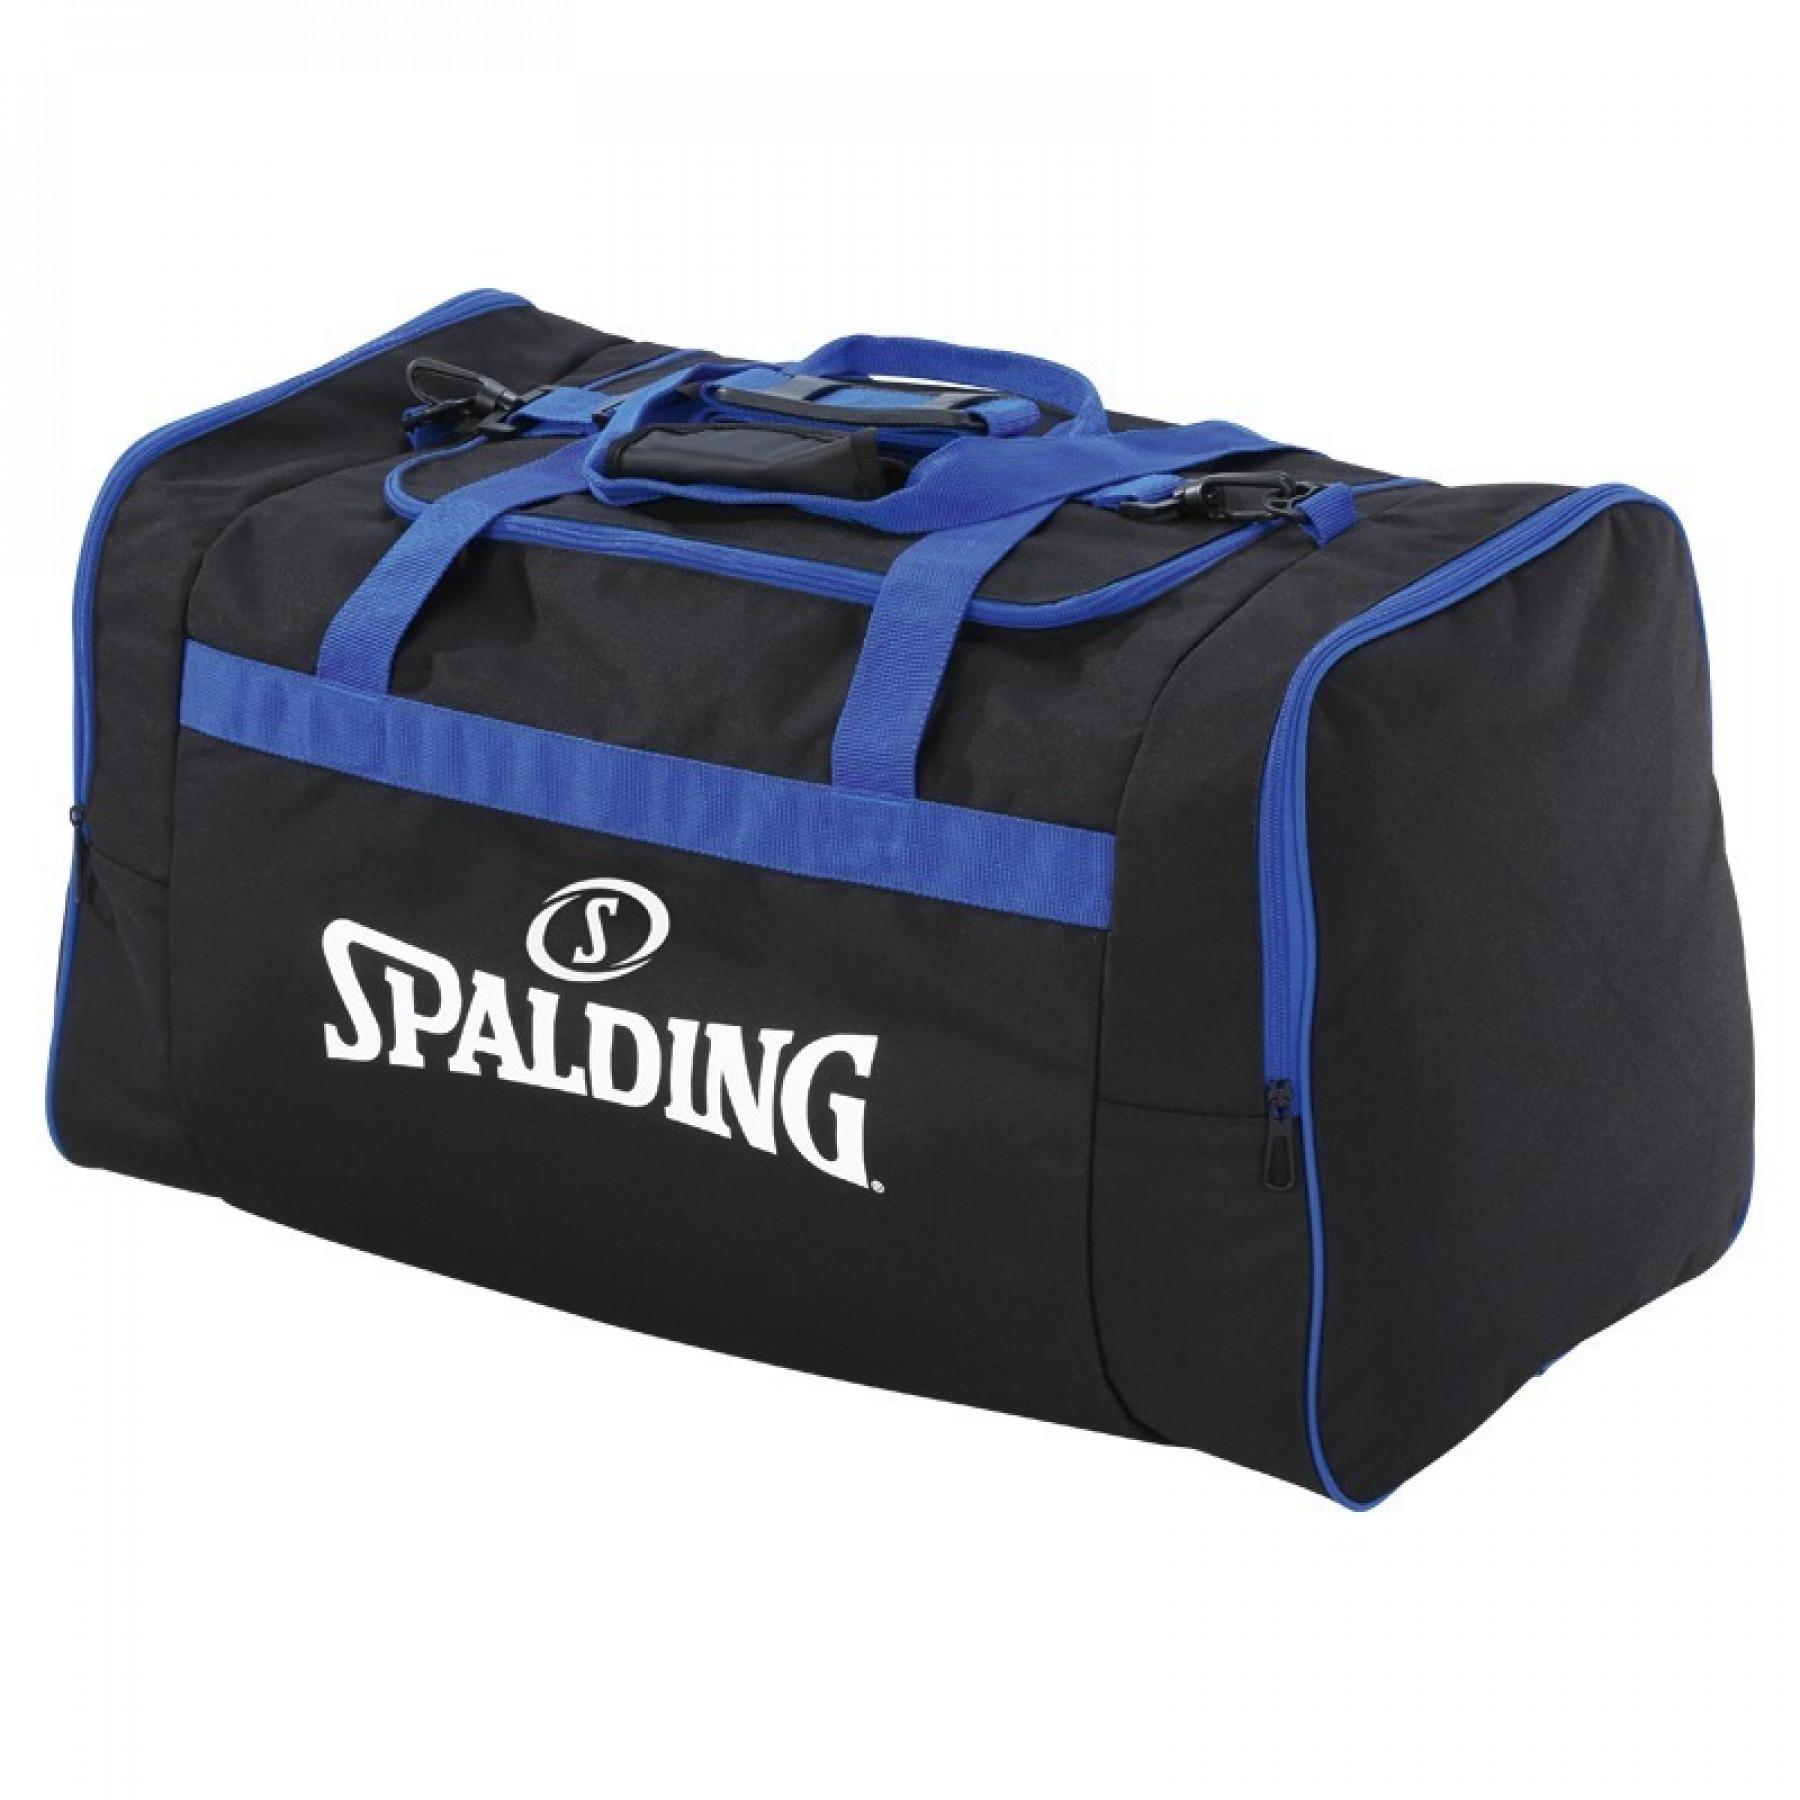 Team bag Spalding (80 litres)